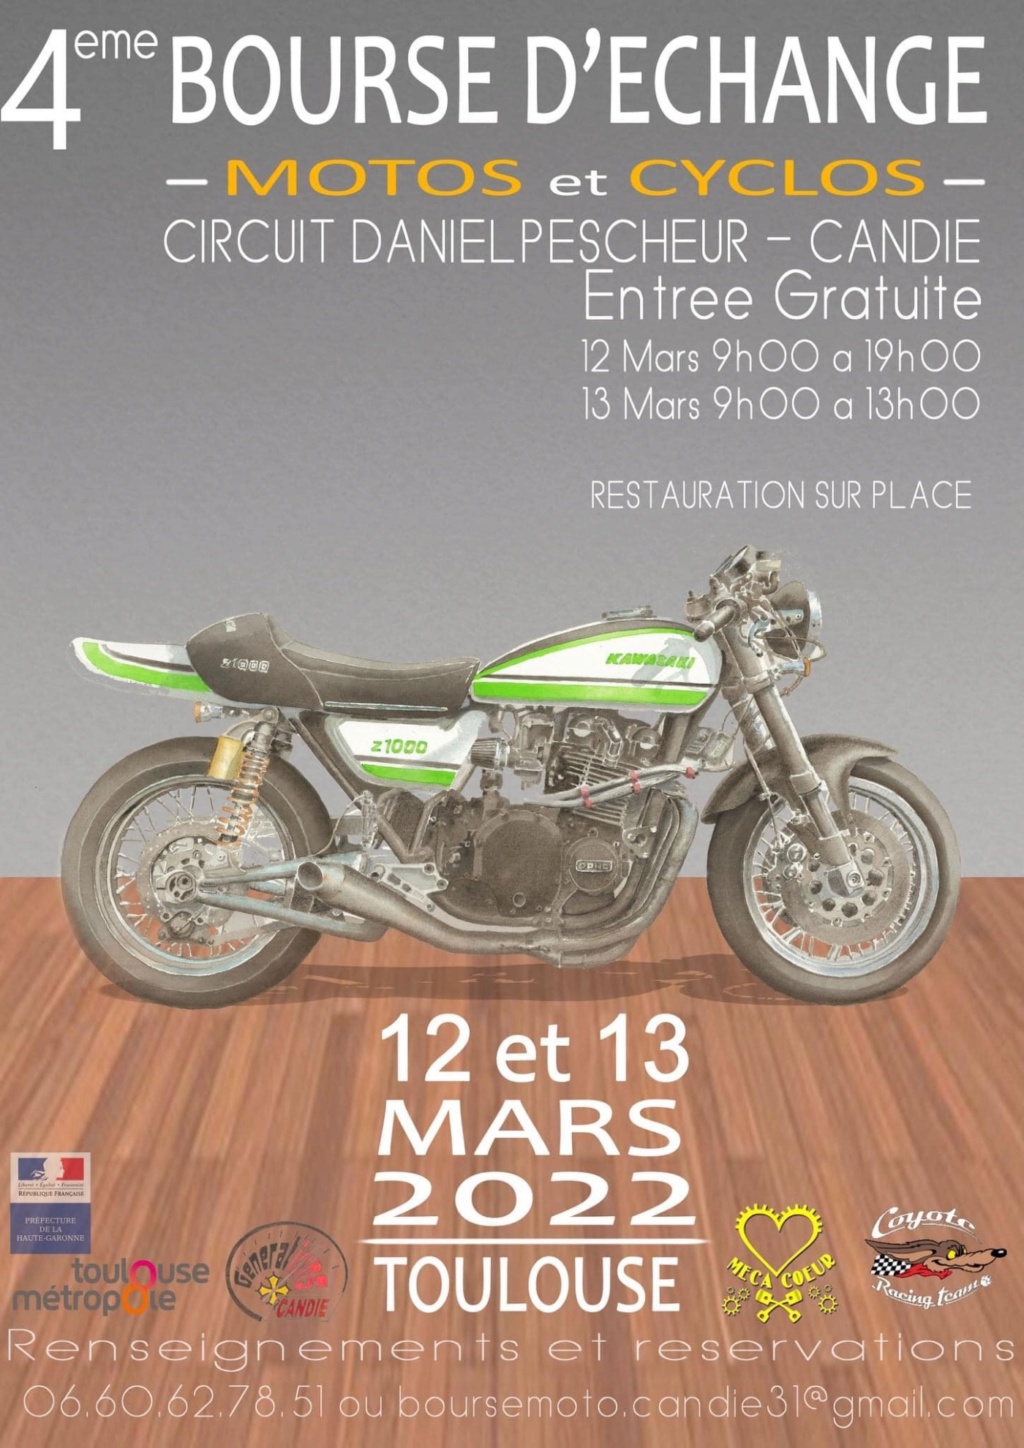 MANIFESTATION - 4eme Bourse D'échange - Motos & Cyclos - 12 & 13 Mars 2022 - Toulouse  61eae310